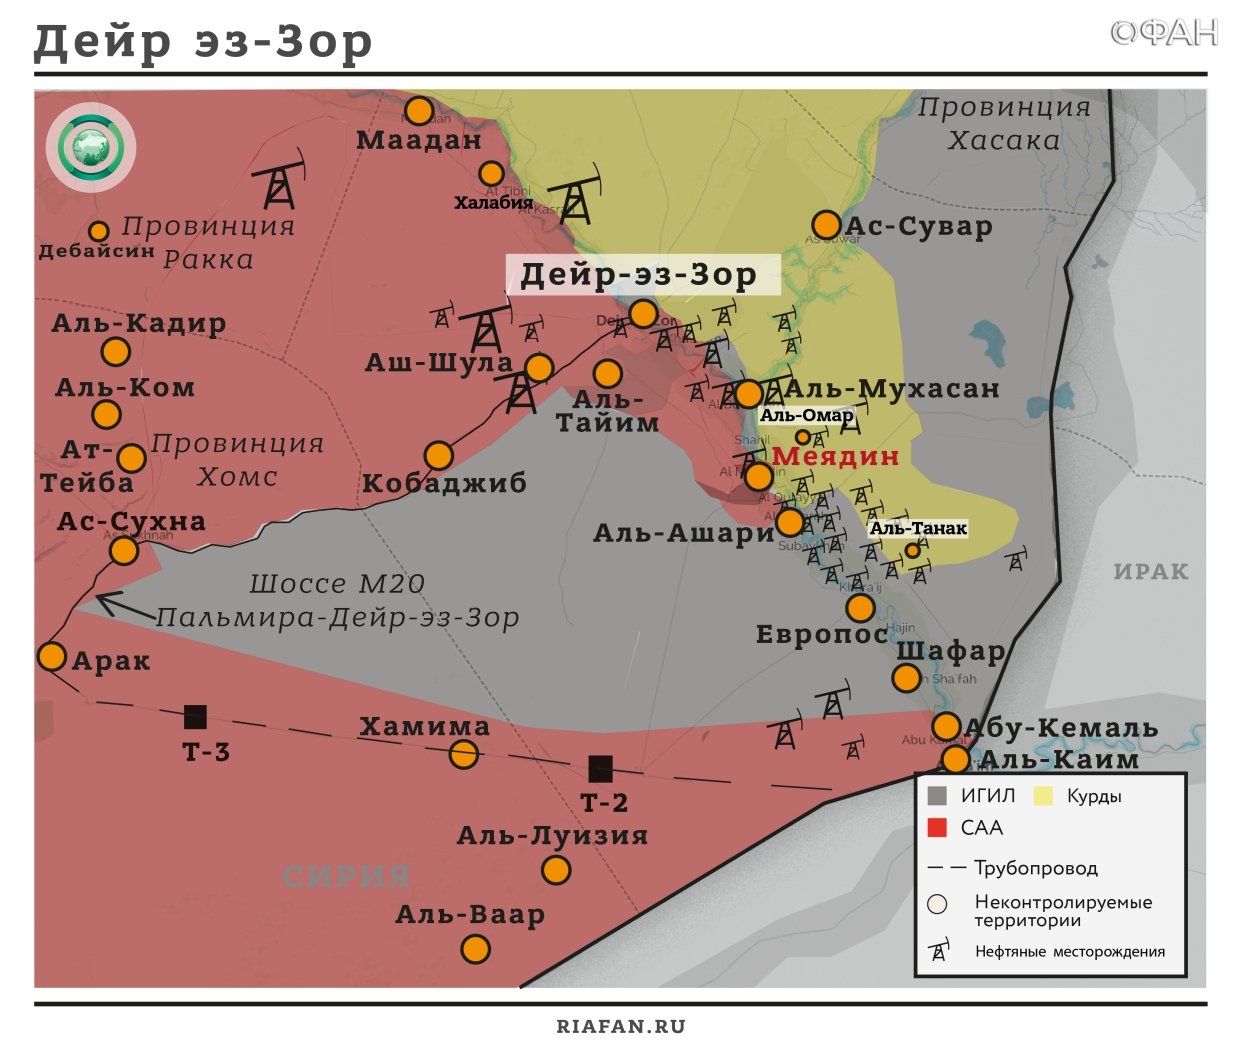 Сирия итоги за сутки на 30 ноября 06.00: 32 террориста ИГ уничтожено в Даръа, 20 мирных жителей Дейр-эз-Зора пострадало на минном поле ИГ